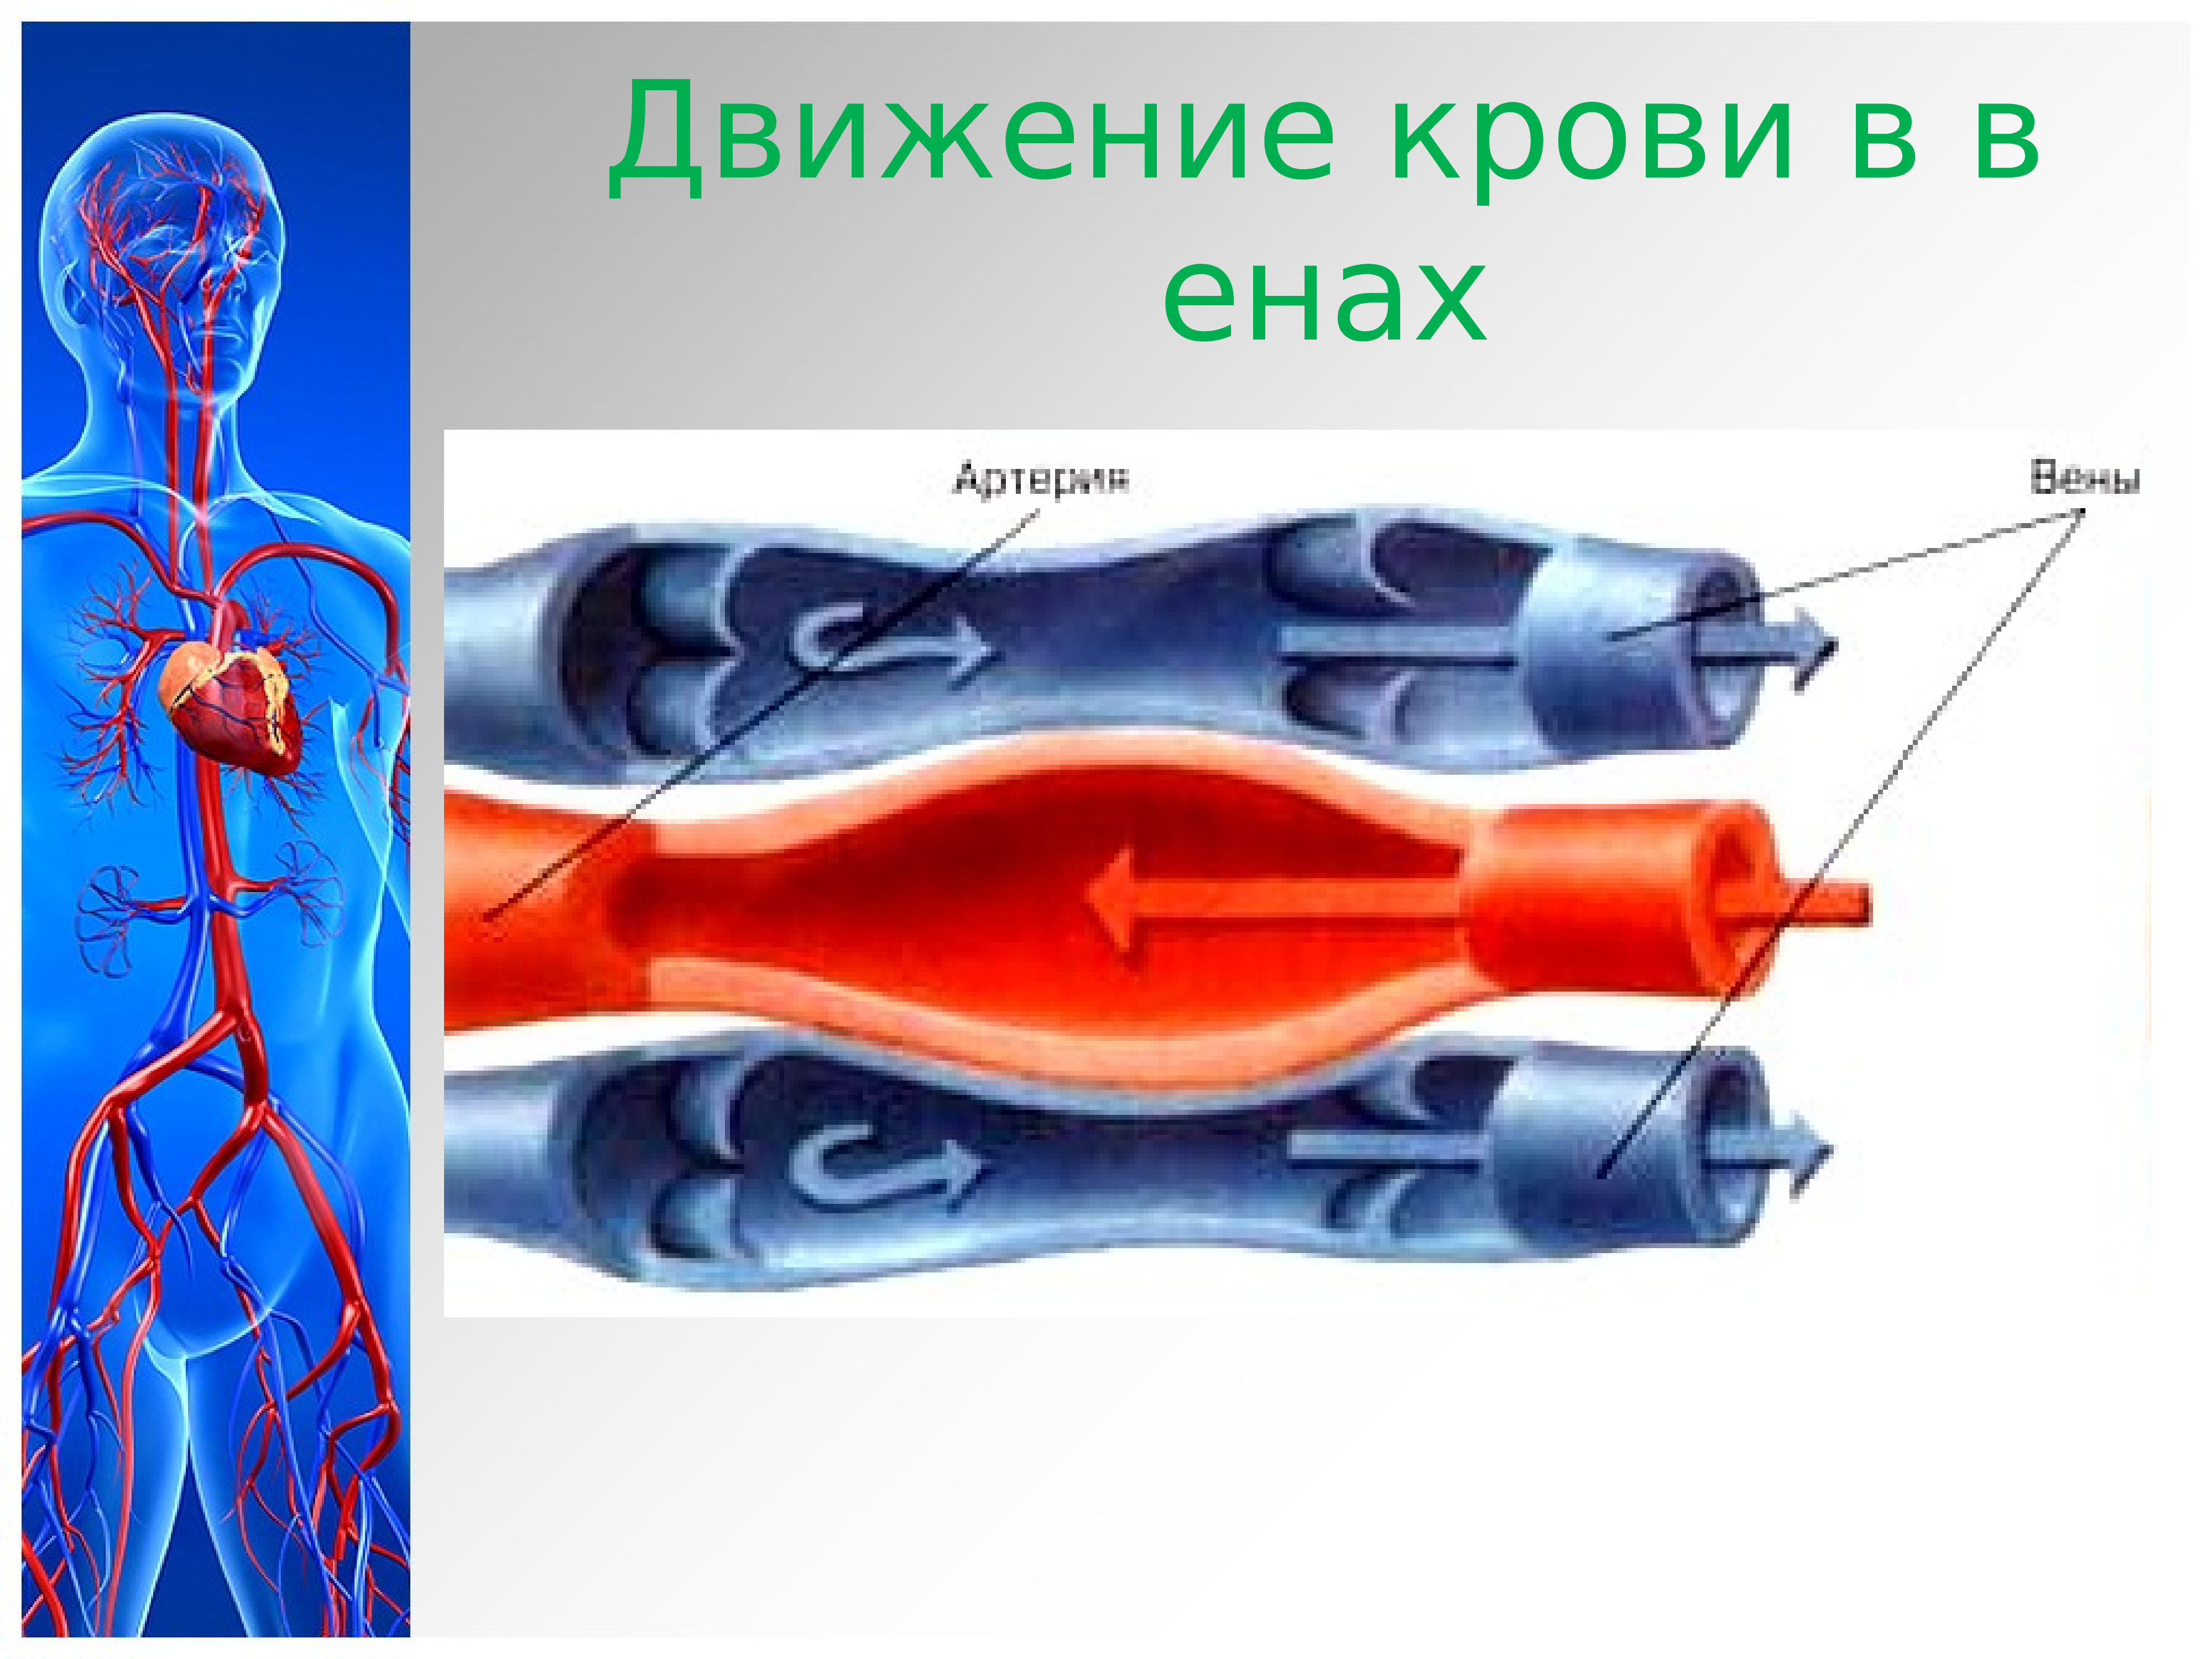 Направление движения крови вен. Движение крови по сосудам. Движение крови по венозным сосудам. Механизмы движения крови в венах.